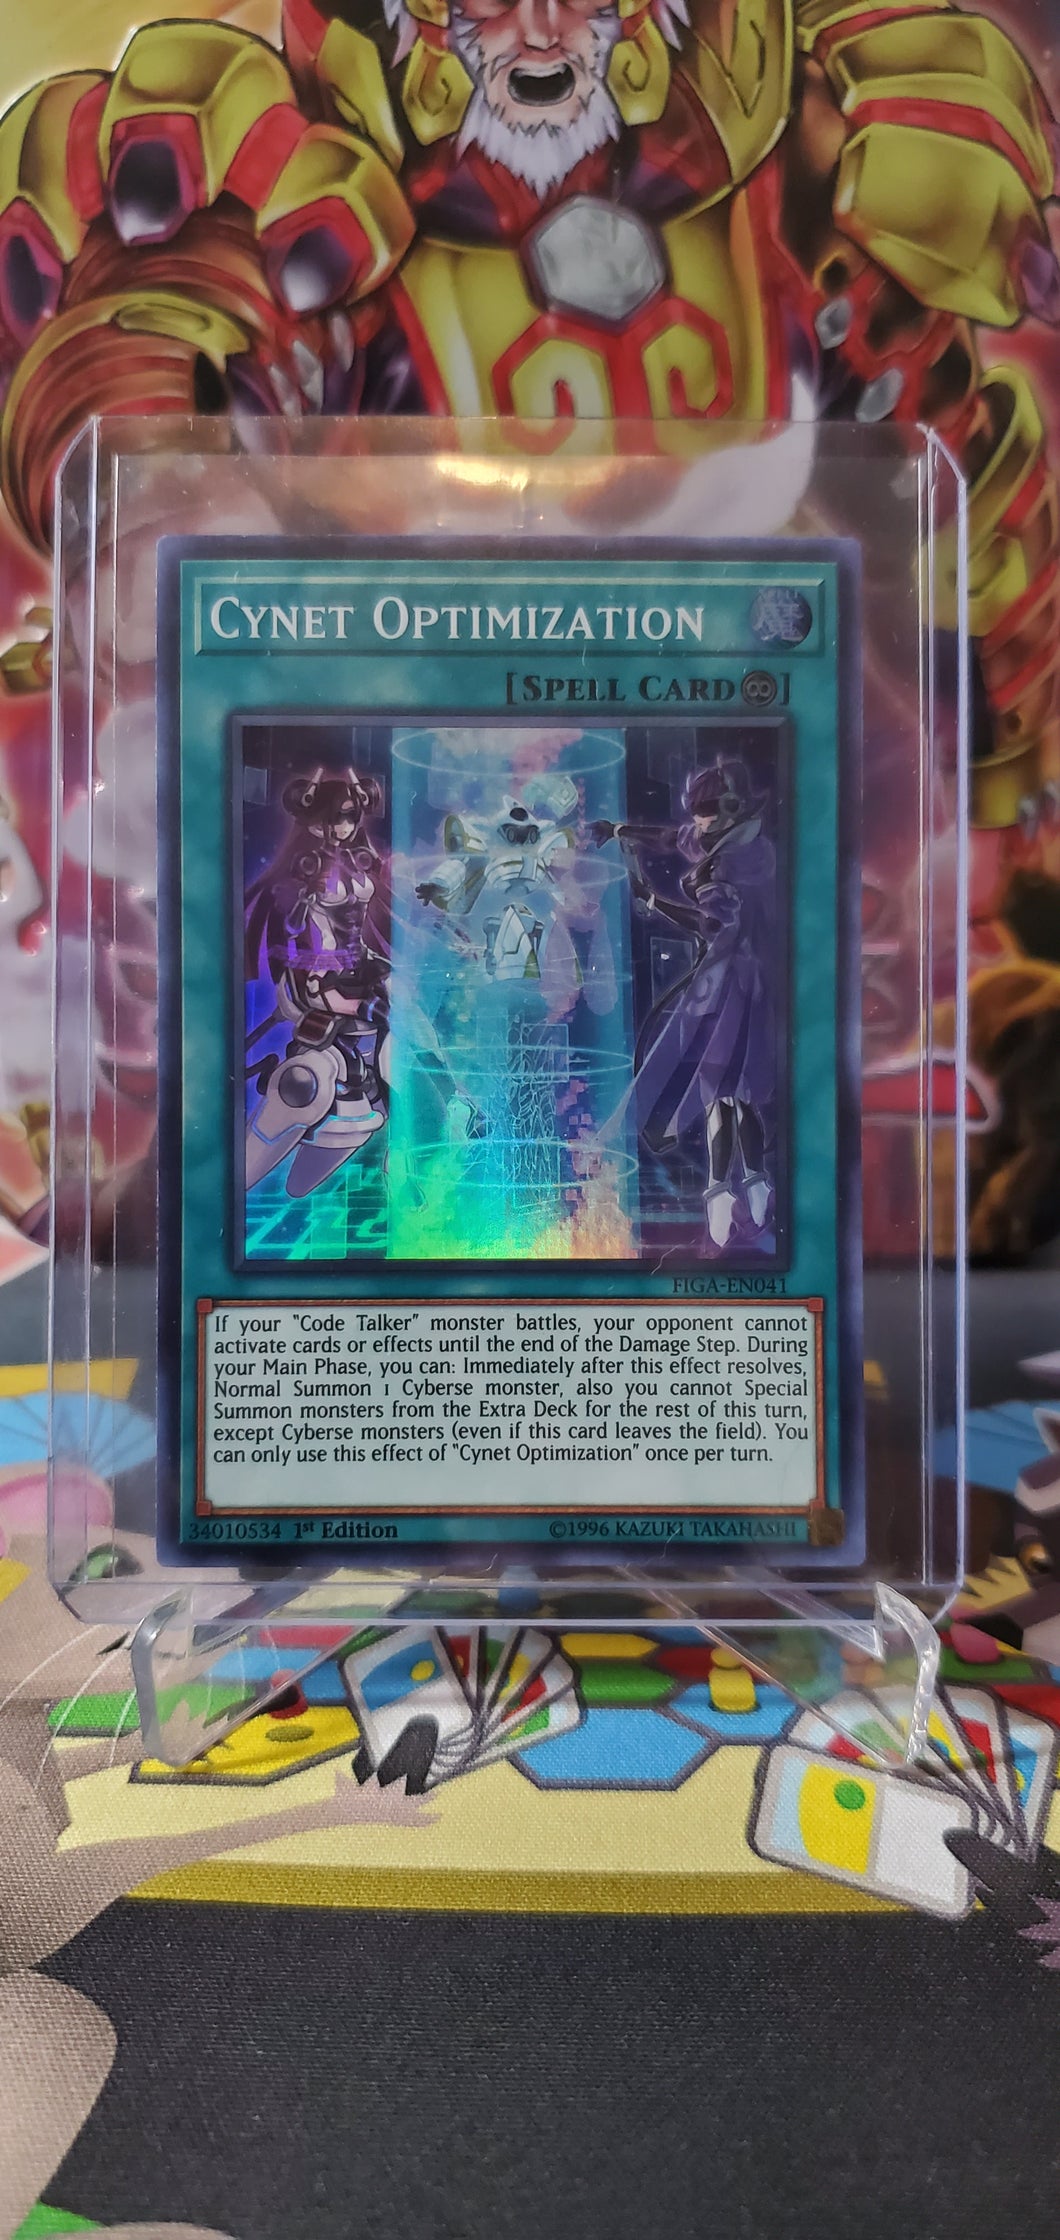 Cynet Optimization